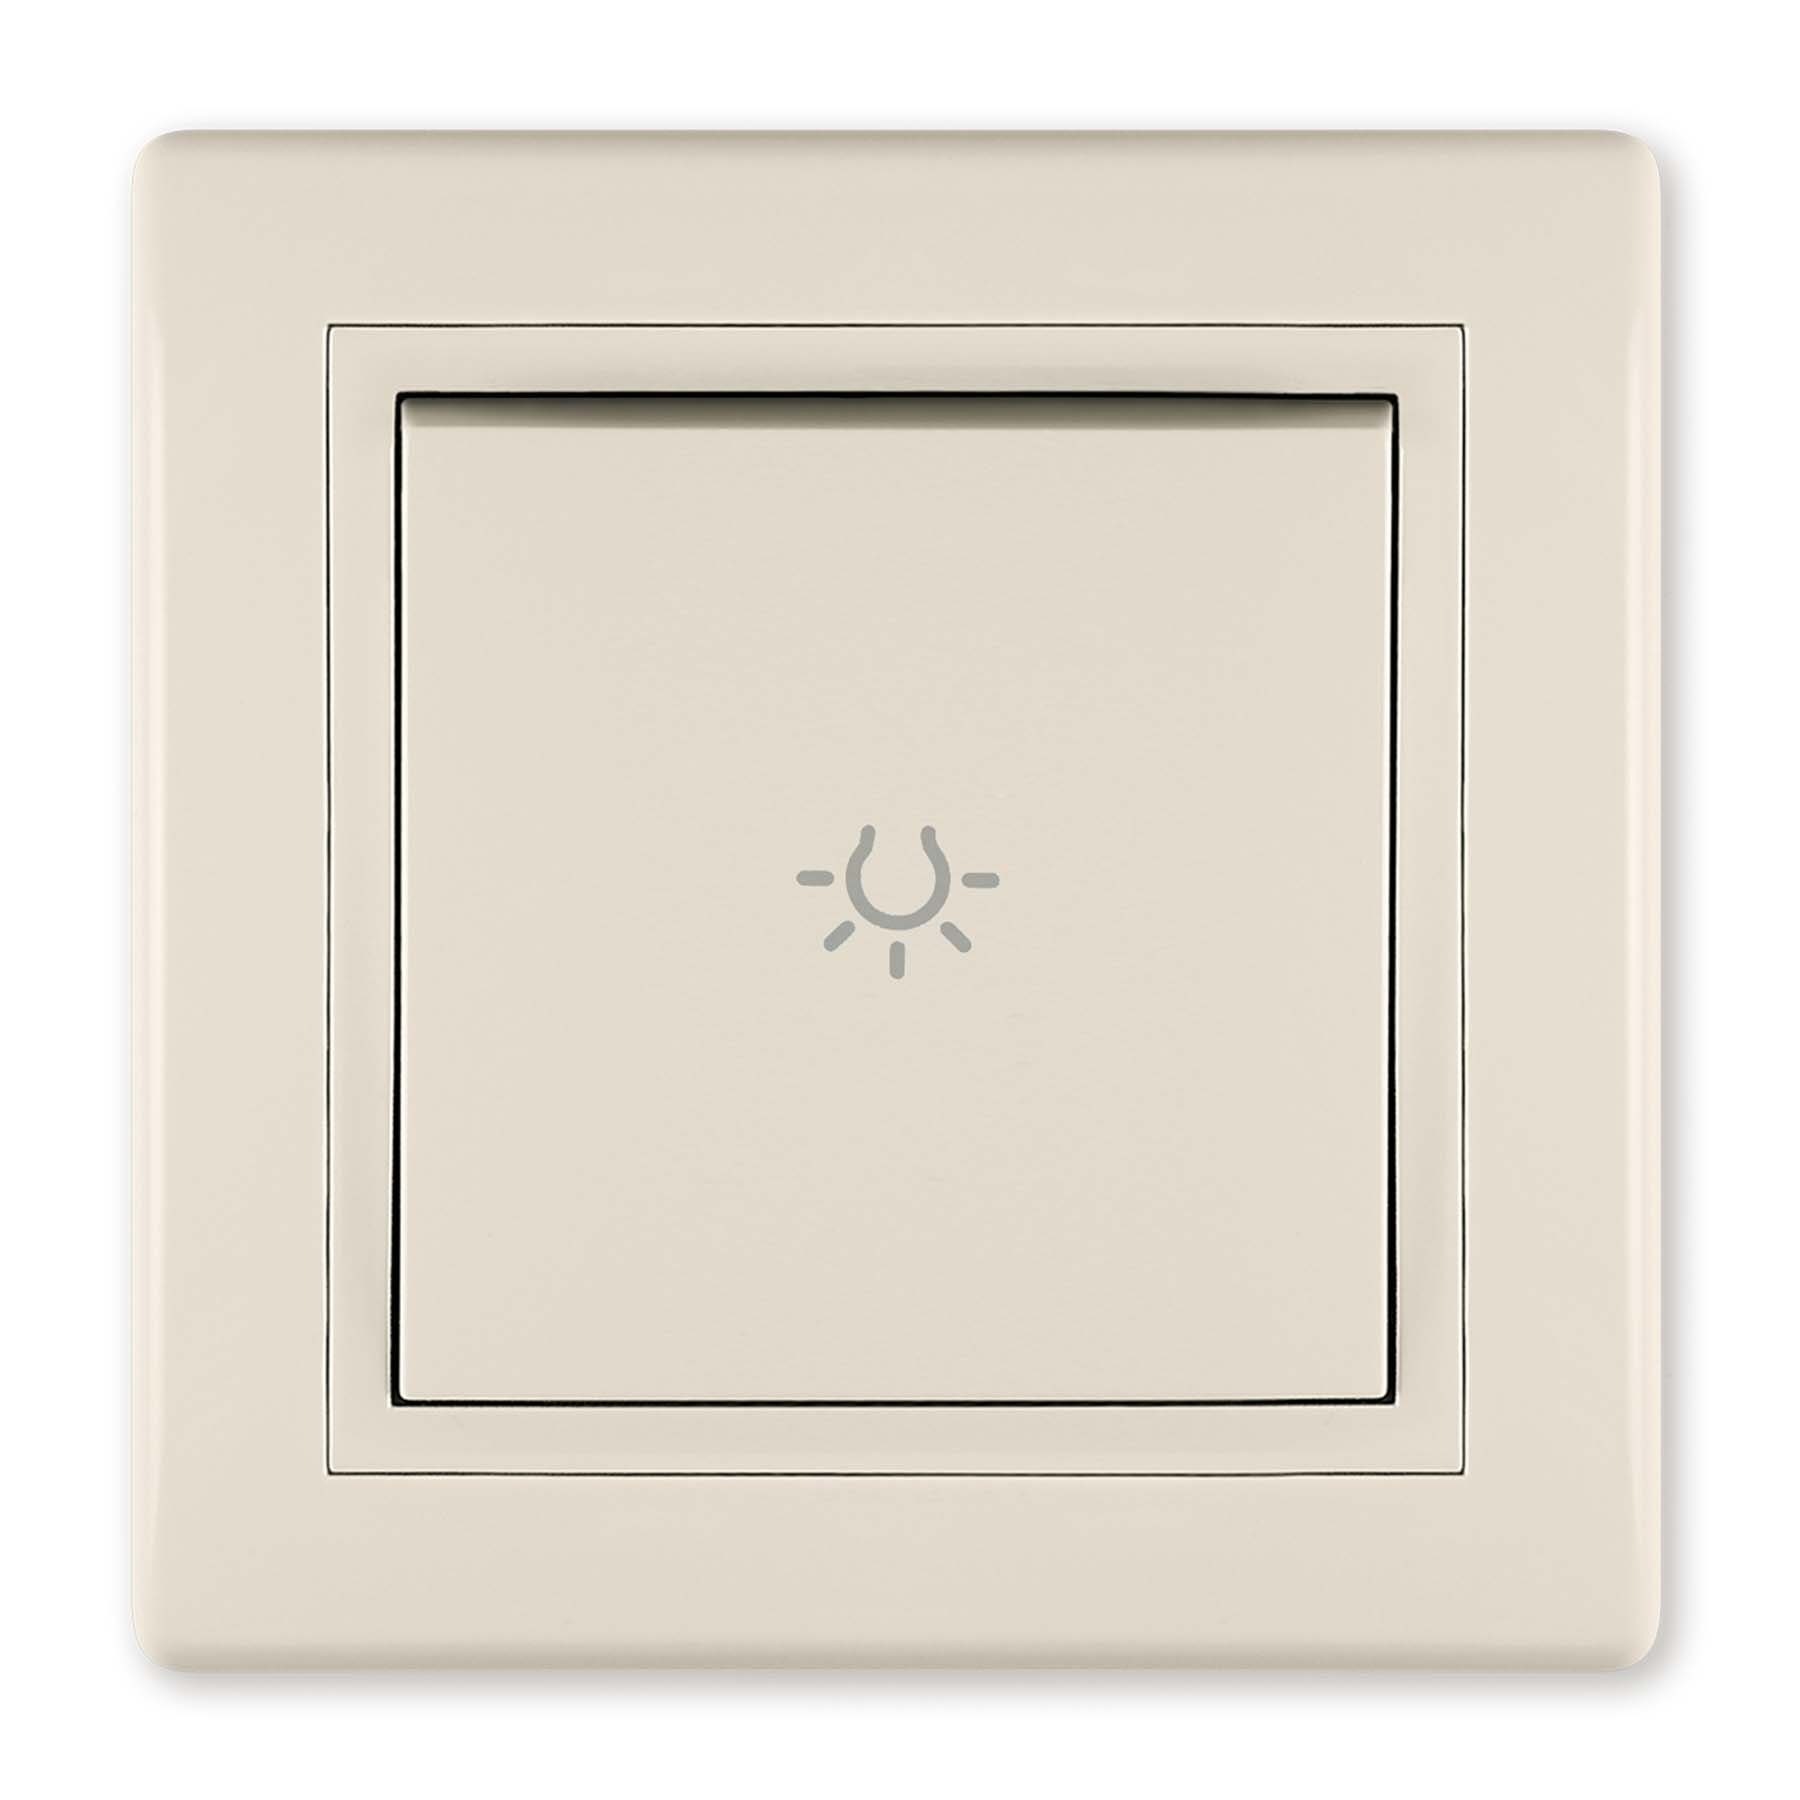 Aling Conel Lichtschalter Taster mit Lichtsymbol 10AX/250V~ inkl.Rahmen (komplett) Beige, VDE-zertifiziert